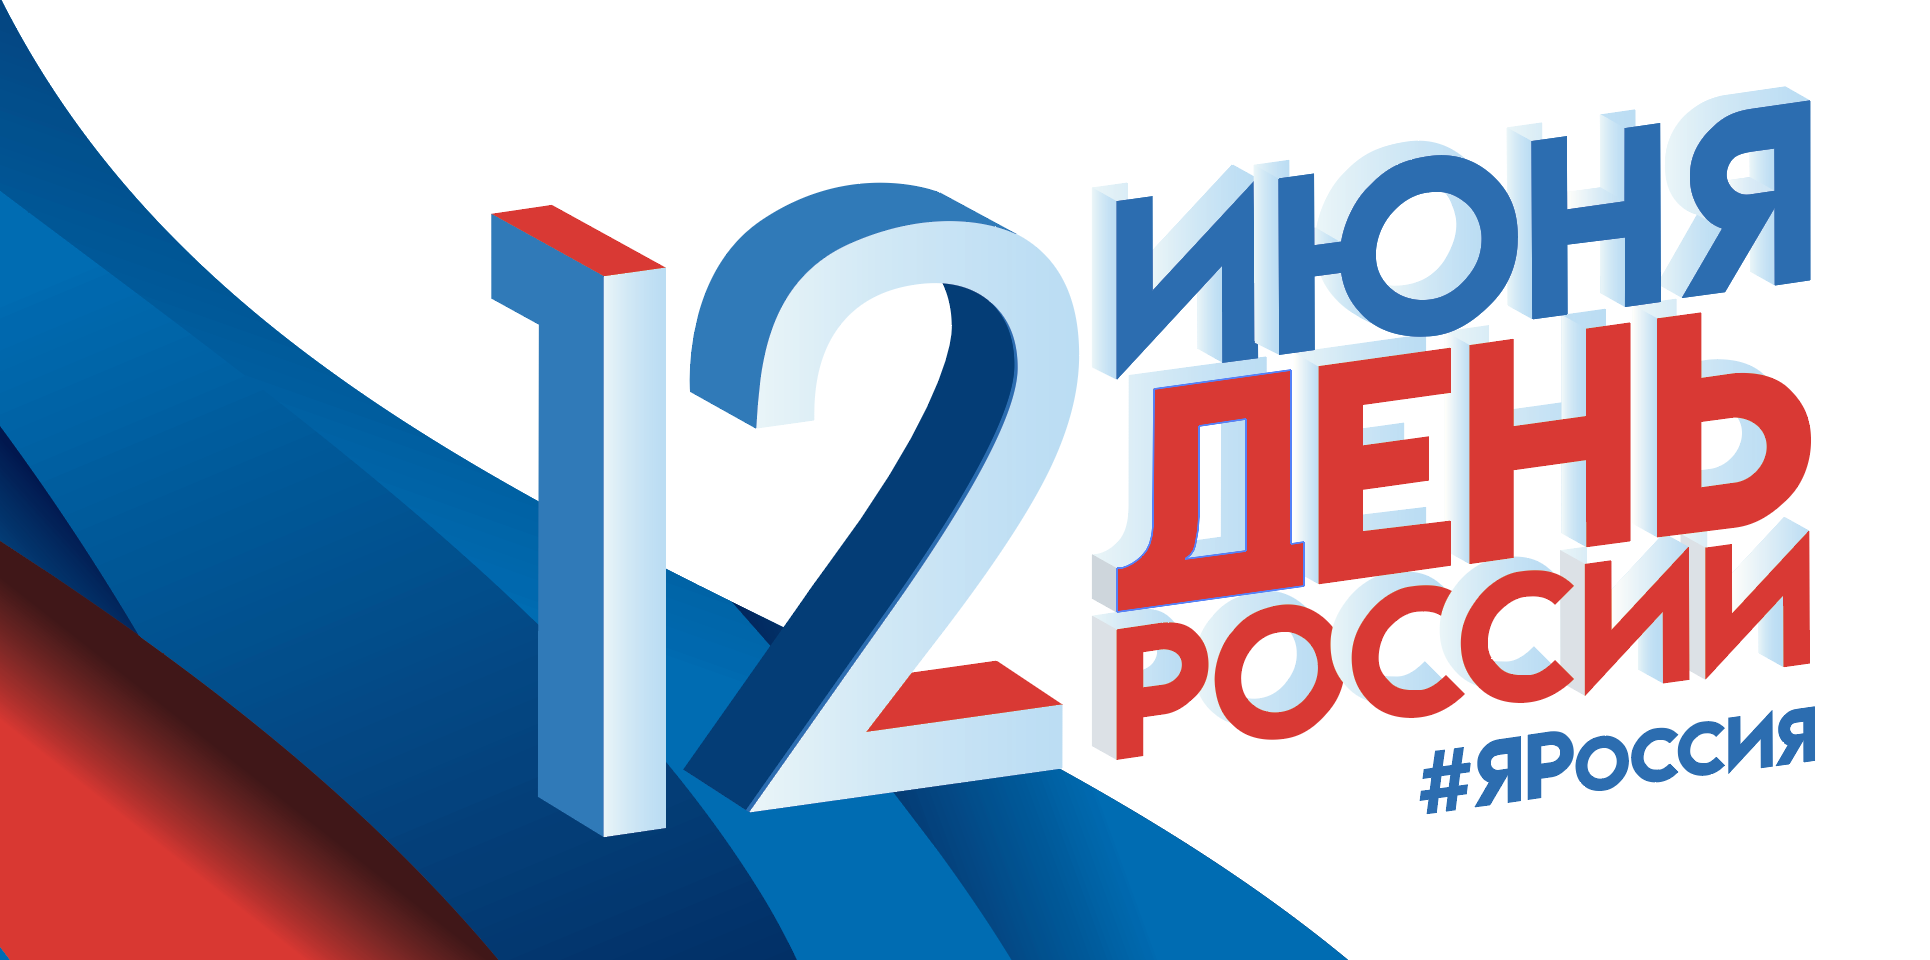 Официальные выходные в июне 2020 года, что а праздник отмечают в России 12 июня